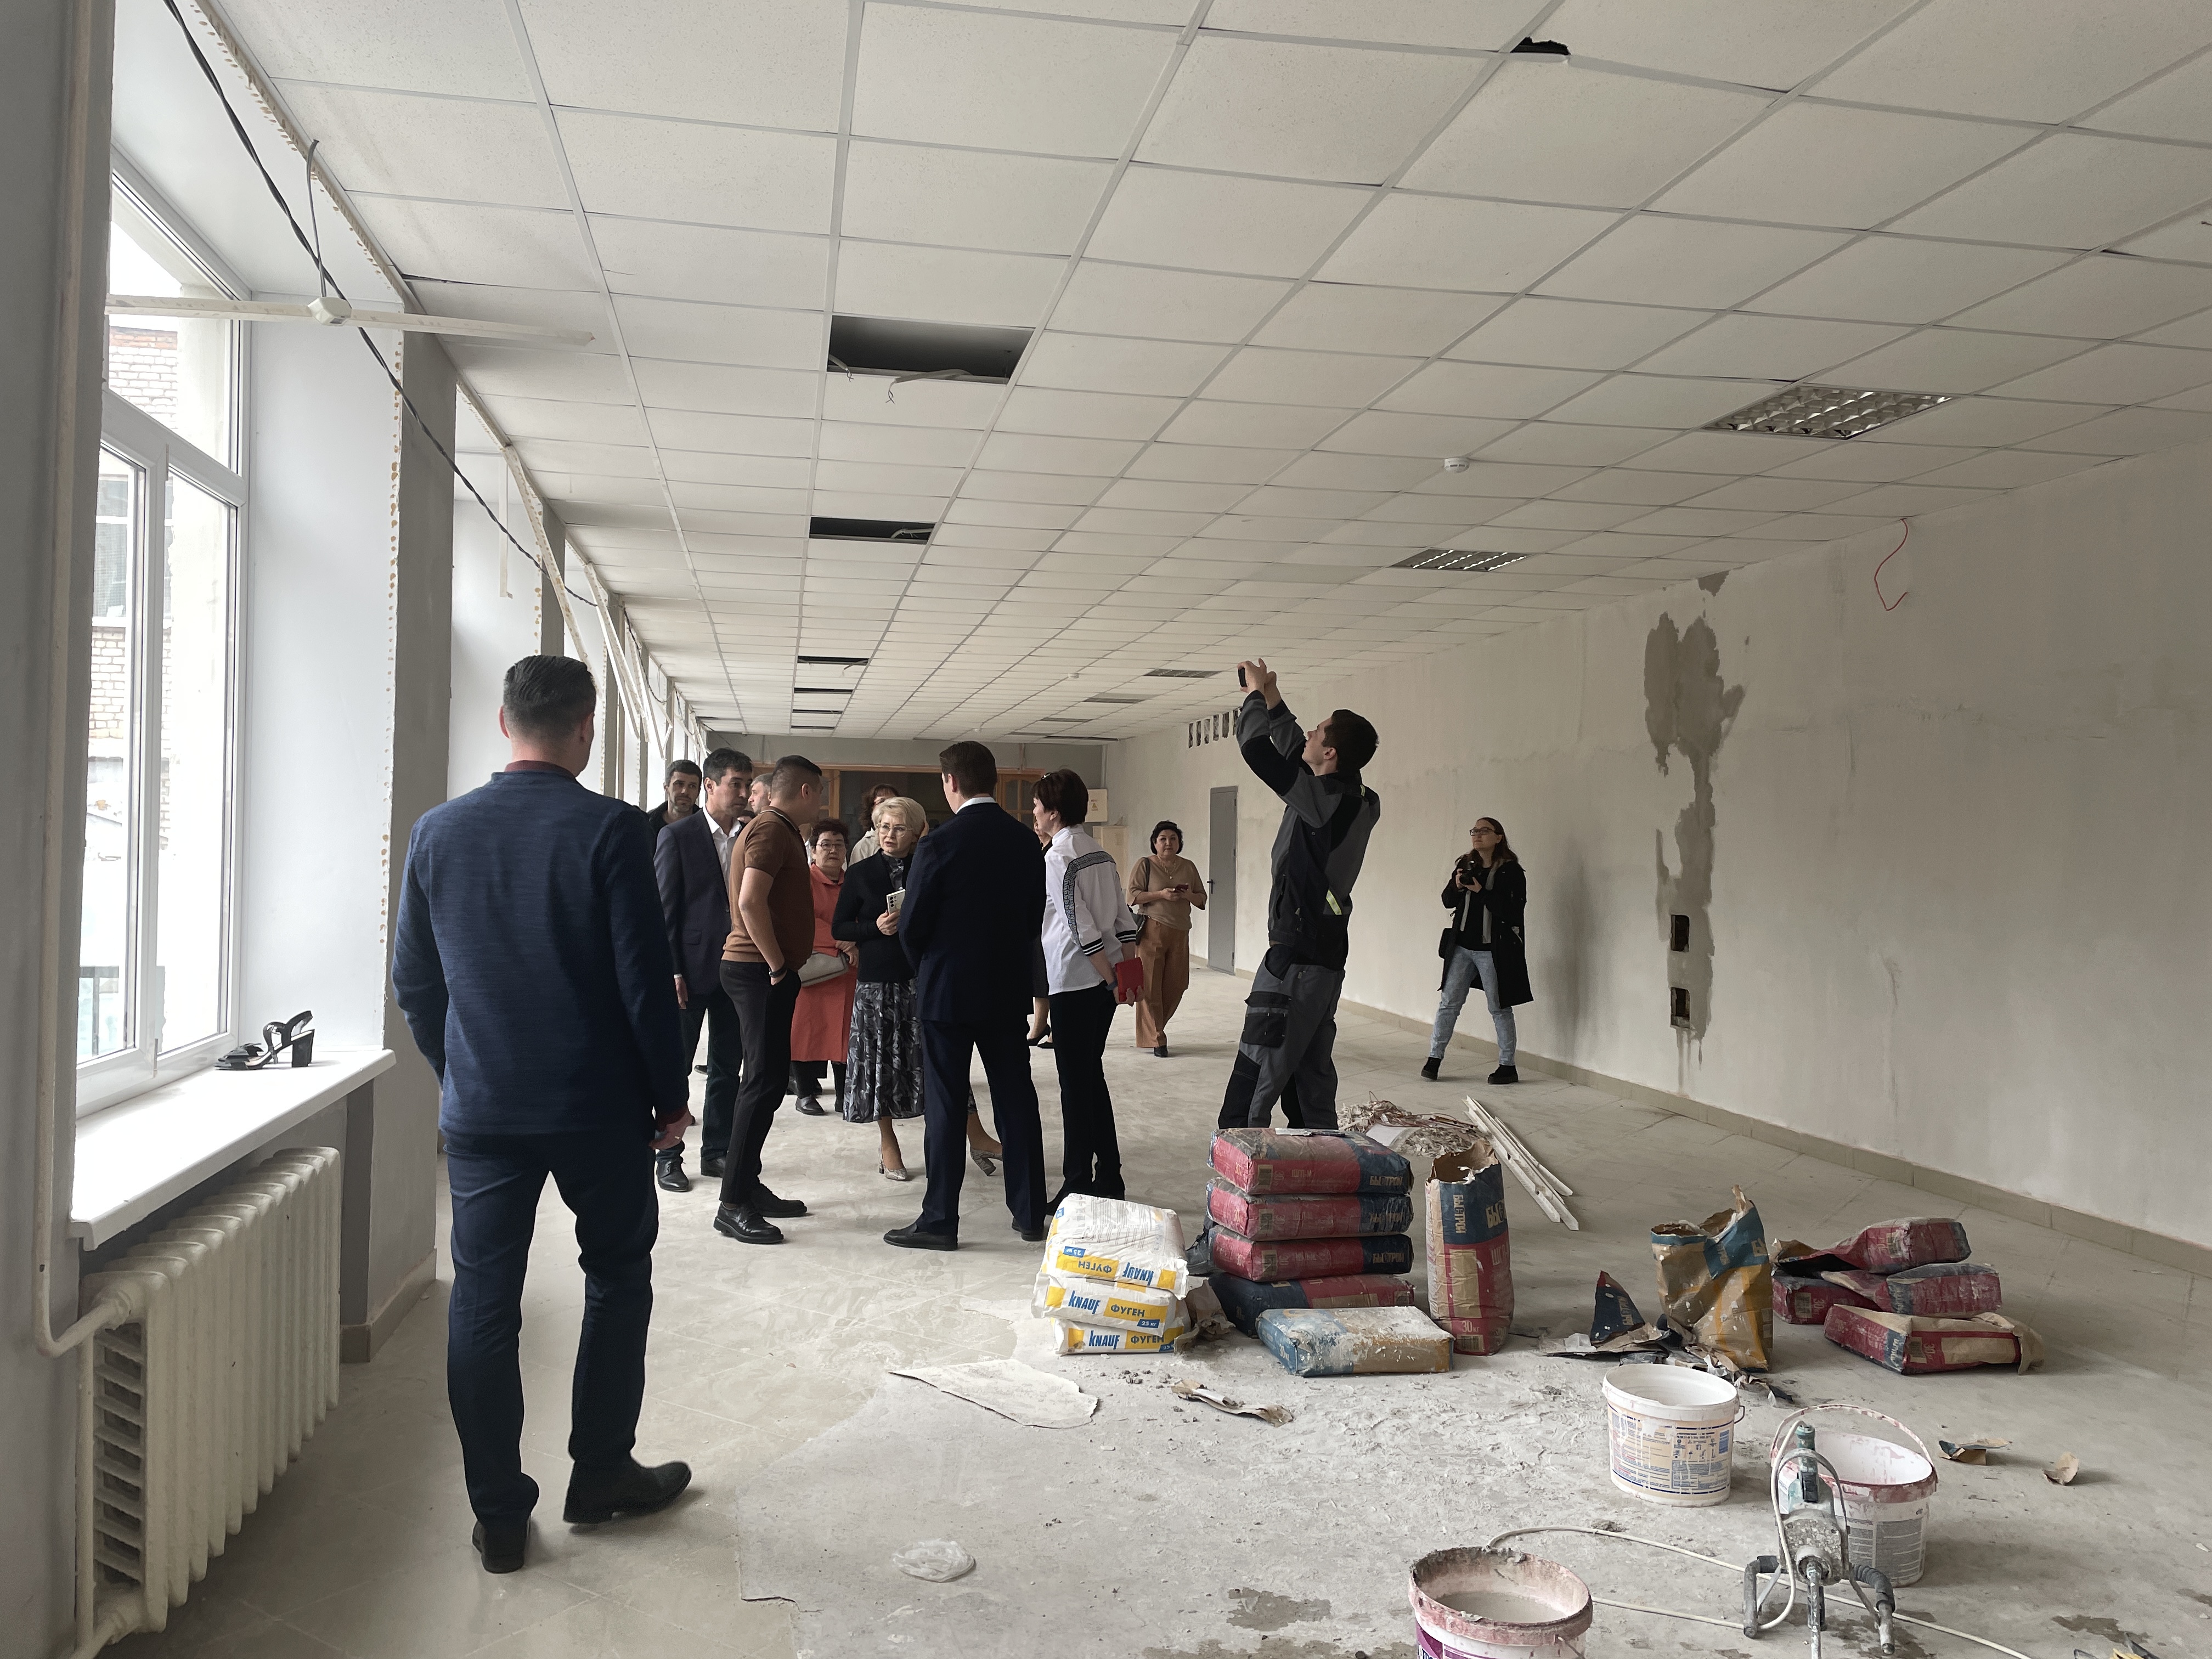 Депутаты Башкирии оценили Стерлитамакскую школу N 17, которую капитально ремонтируют по федеральному проекту «Школа мечты»